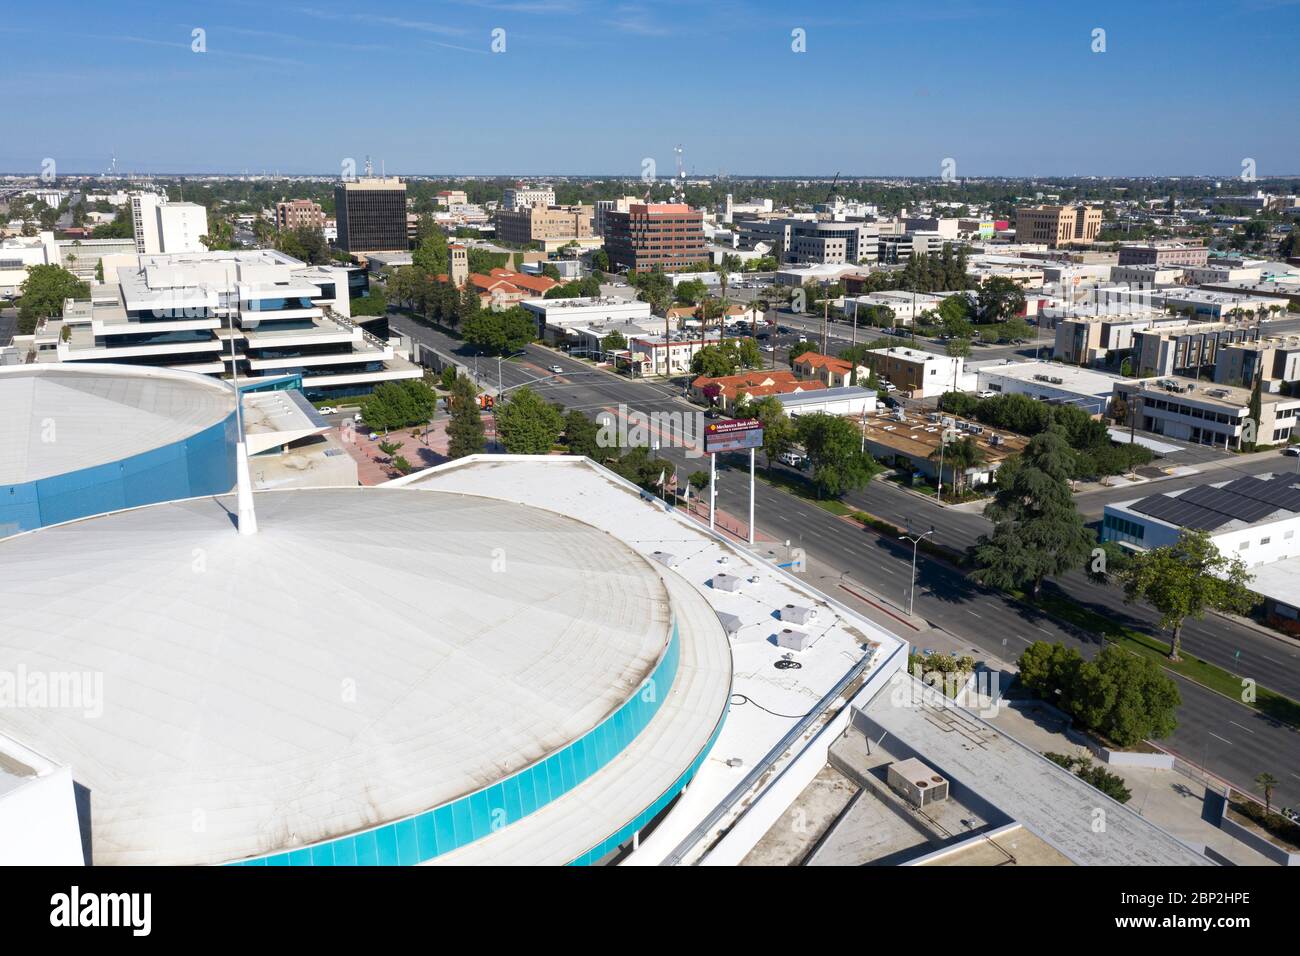 Vista aérea del centro de Bakersfield, centro de convenciones Foto de stock